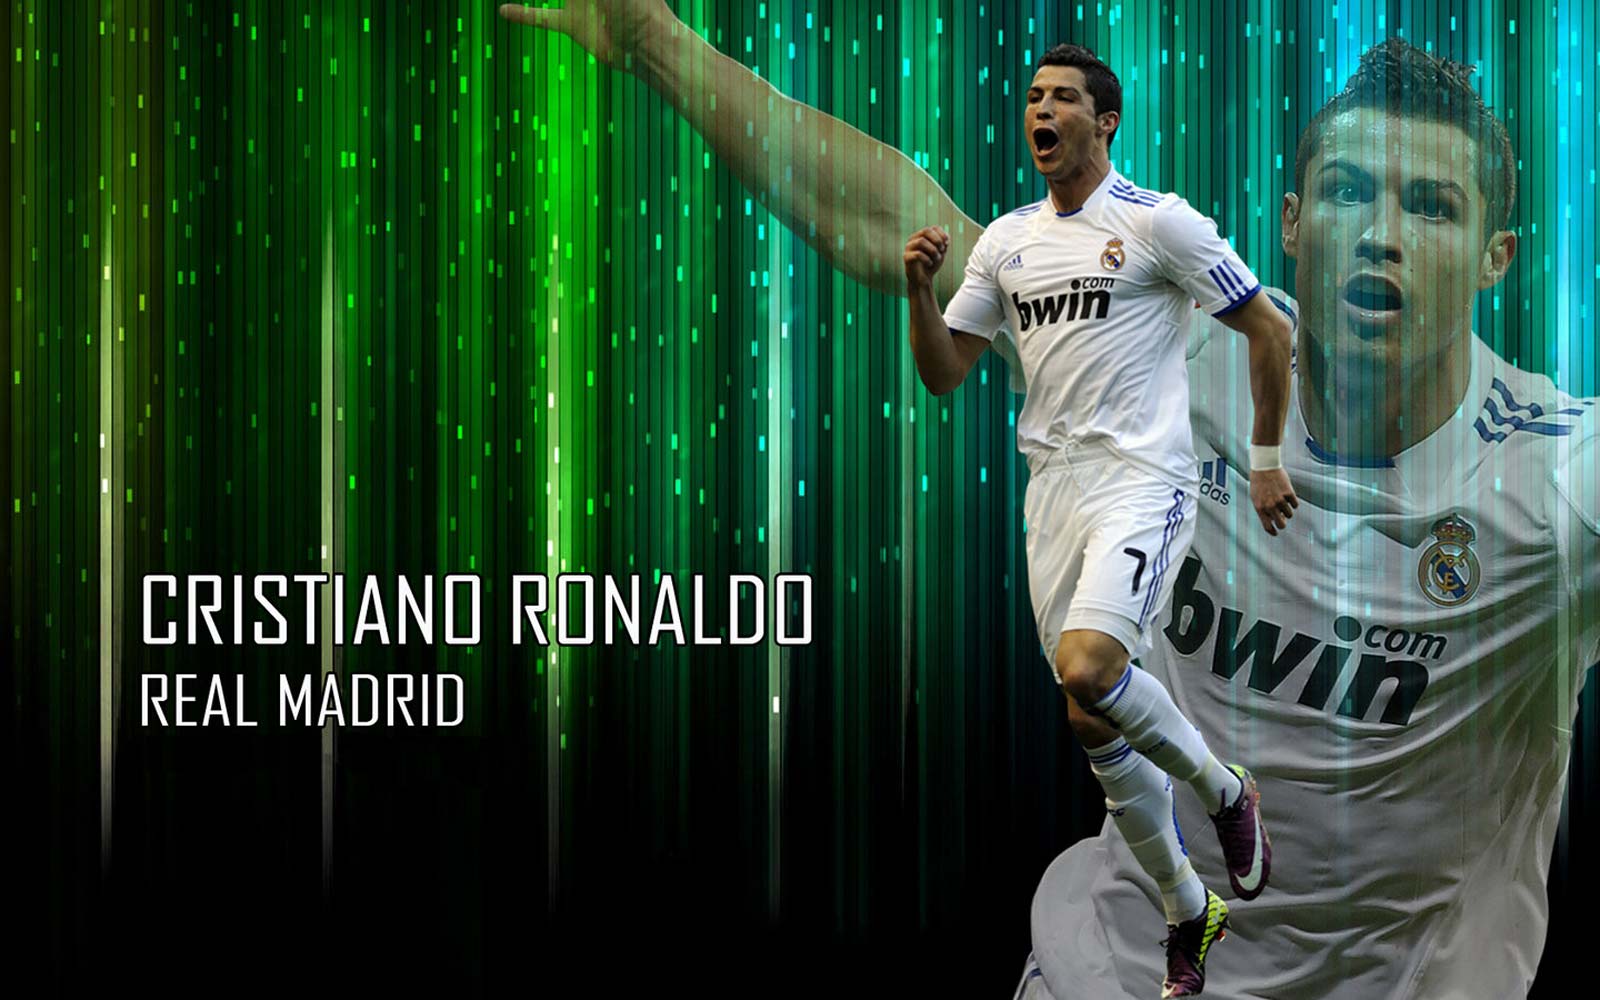 http://4.bp.blogspot.com/-_cay1ubaD3A/UIL_hJ929UI/AAAAAAAAF8c/iSzq6a0YYNs/s1600/Cristiano+Ronaldo+Real+Madrid+2012-2013+13.jpg